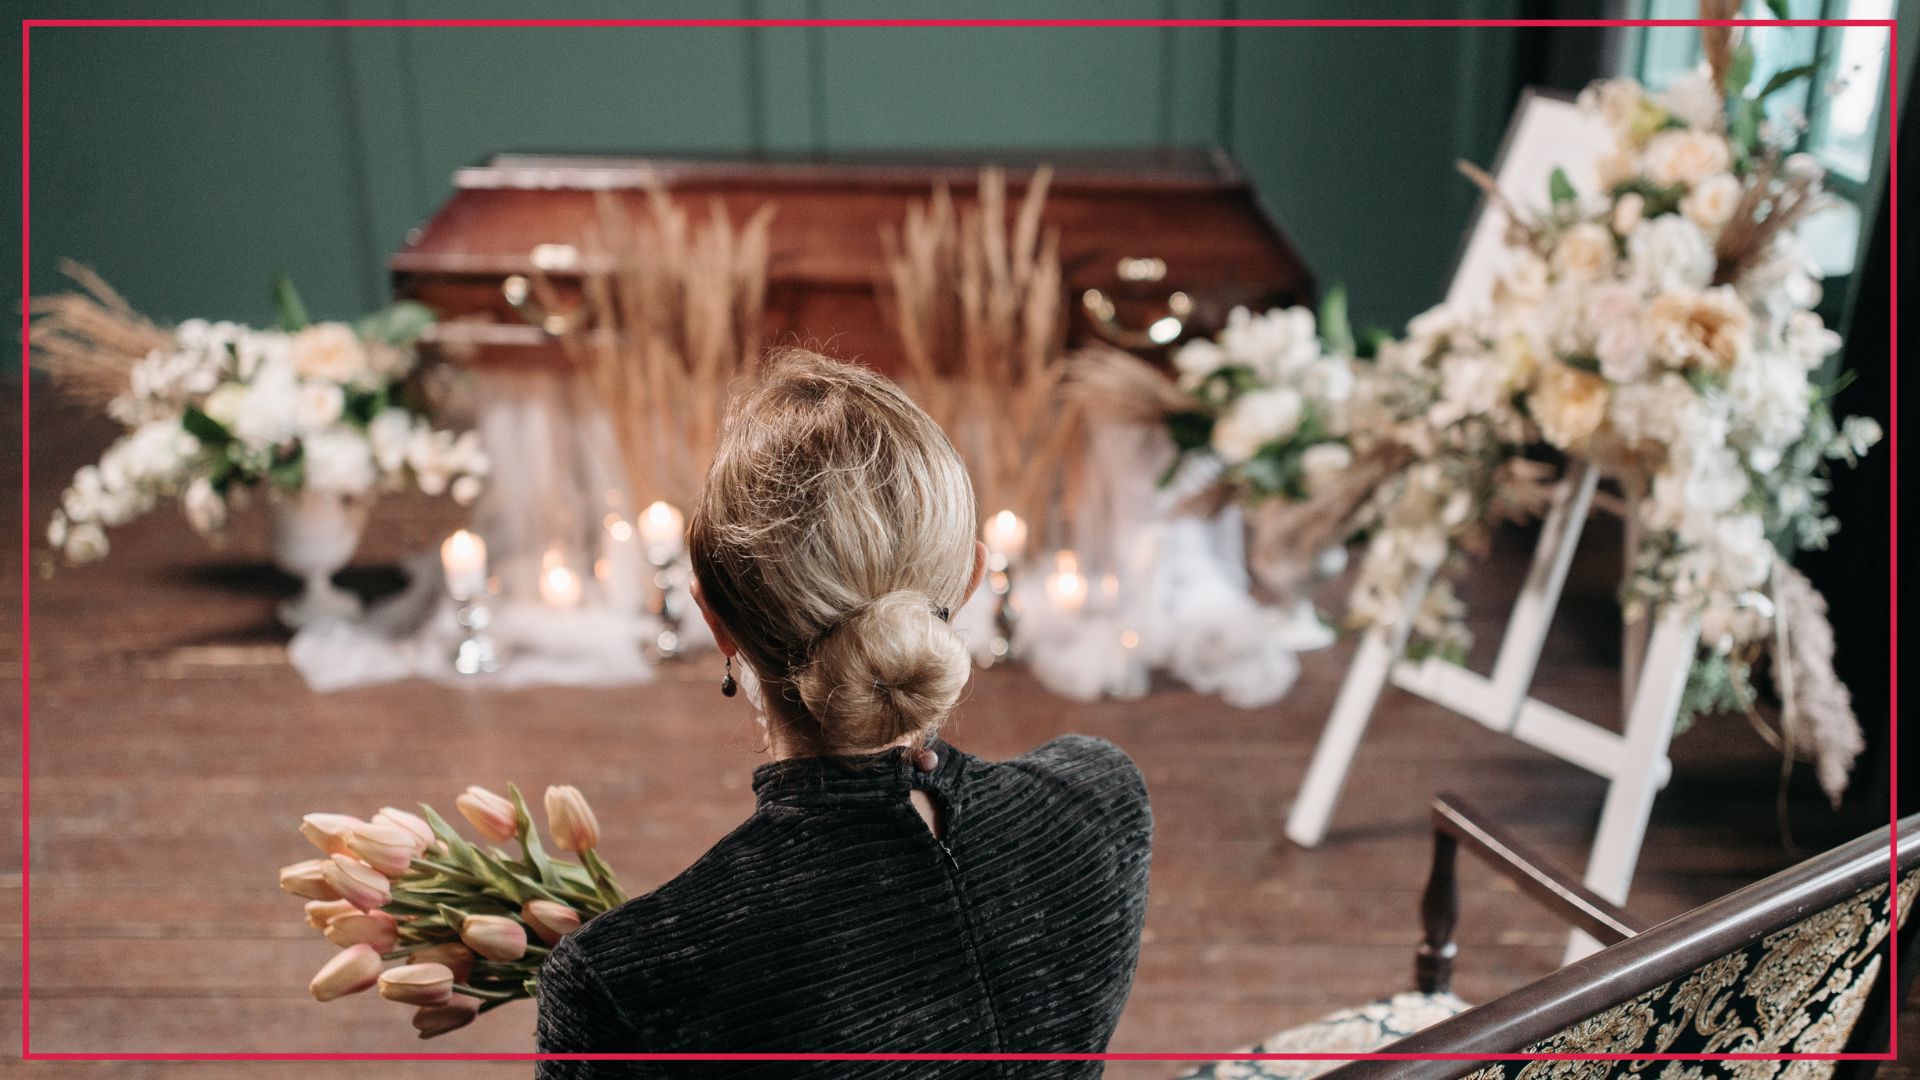 Kobieta na pogrzebie siedzi przed trumną przystrojoną w personalizowany sposób - personalizacja to jeden z kierunków dla branży pogrzebowej na 2022 rok